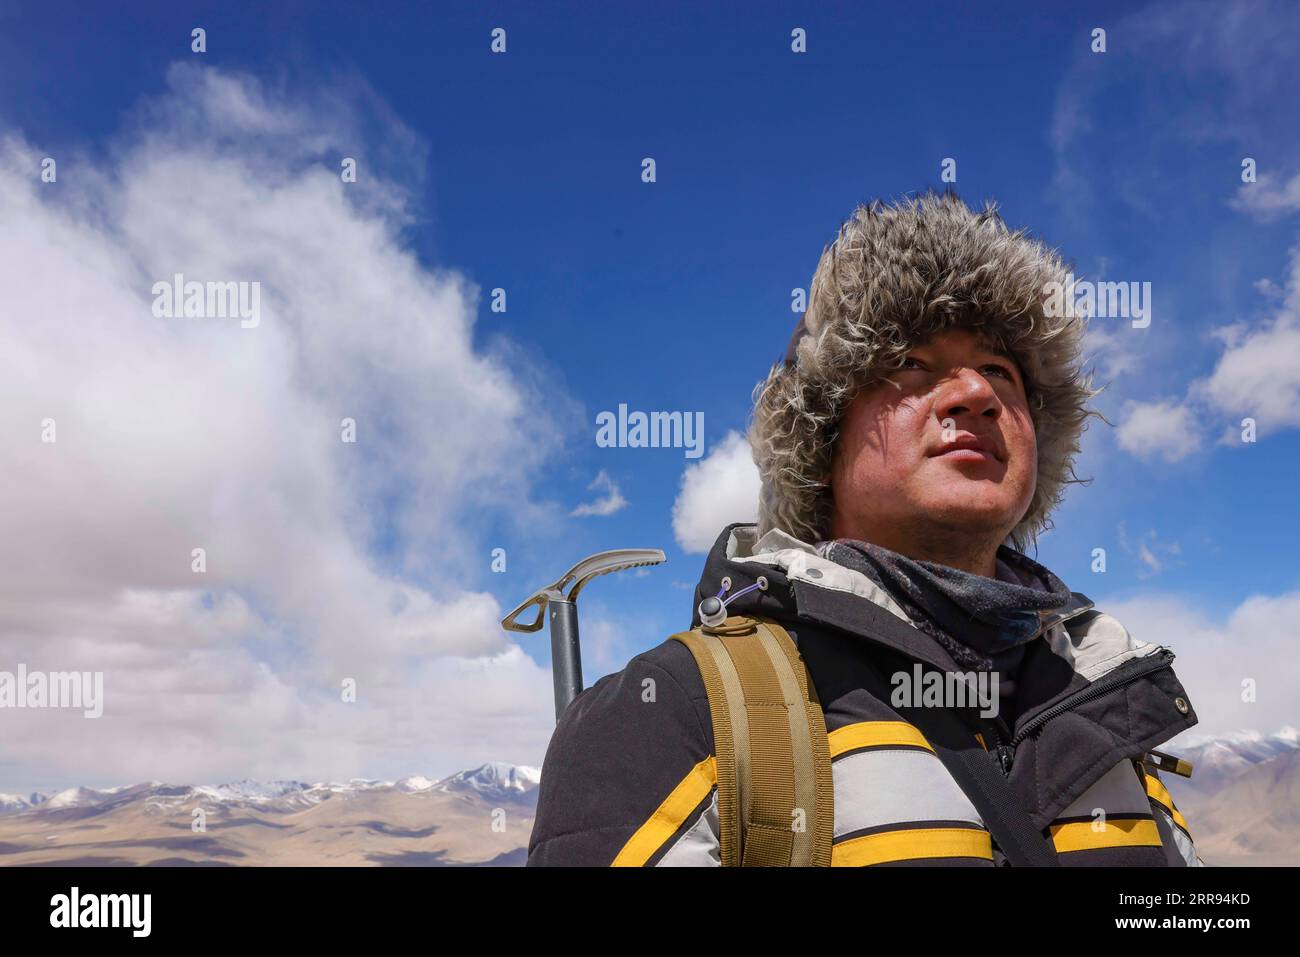 210528 -- URUMQI, 28 maggio 2021 -- Bikmirza Turdil prende parte ad un addestramento mirato sulla Muztagh Ata nella regione autonoma di Xinjiang Uygur della Cina nord-occidentale, 15 maggio 2021. Bikmirza, un allevatore di 24 anni, nacque e crebbe ai piedi del Muztagh Ata, un picco con un'altitudine di oltre 7.500 metri, nella regione autonoma di Uygur dello Xinjiang Pamir in Cina. Ha iniziato a lavorare come guida aiutando gli scalatori a trasportare attrezzature e provviste all'età di 18 anni. Scalare il Muztagh Ata, un simbolo di coraggio, è anche considerato come la cerimonia di raggiungimento della maggiore età per i giovani locali. Nel Subax Village Foto Stock